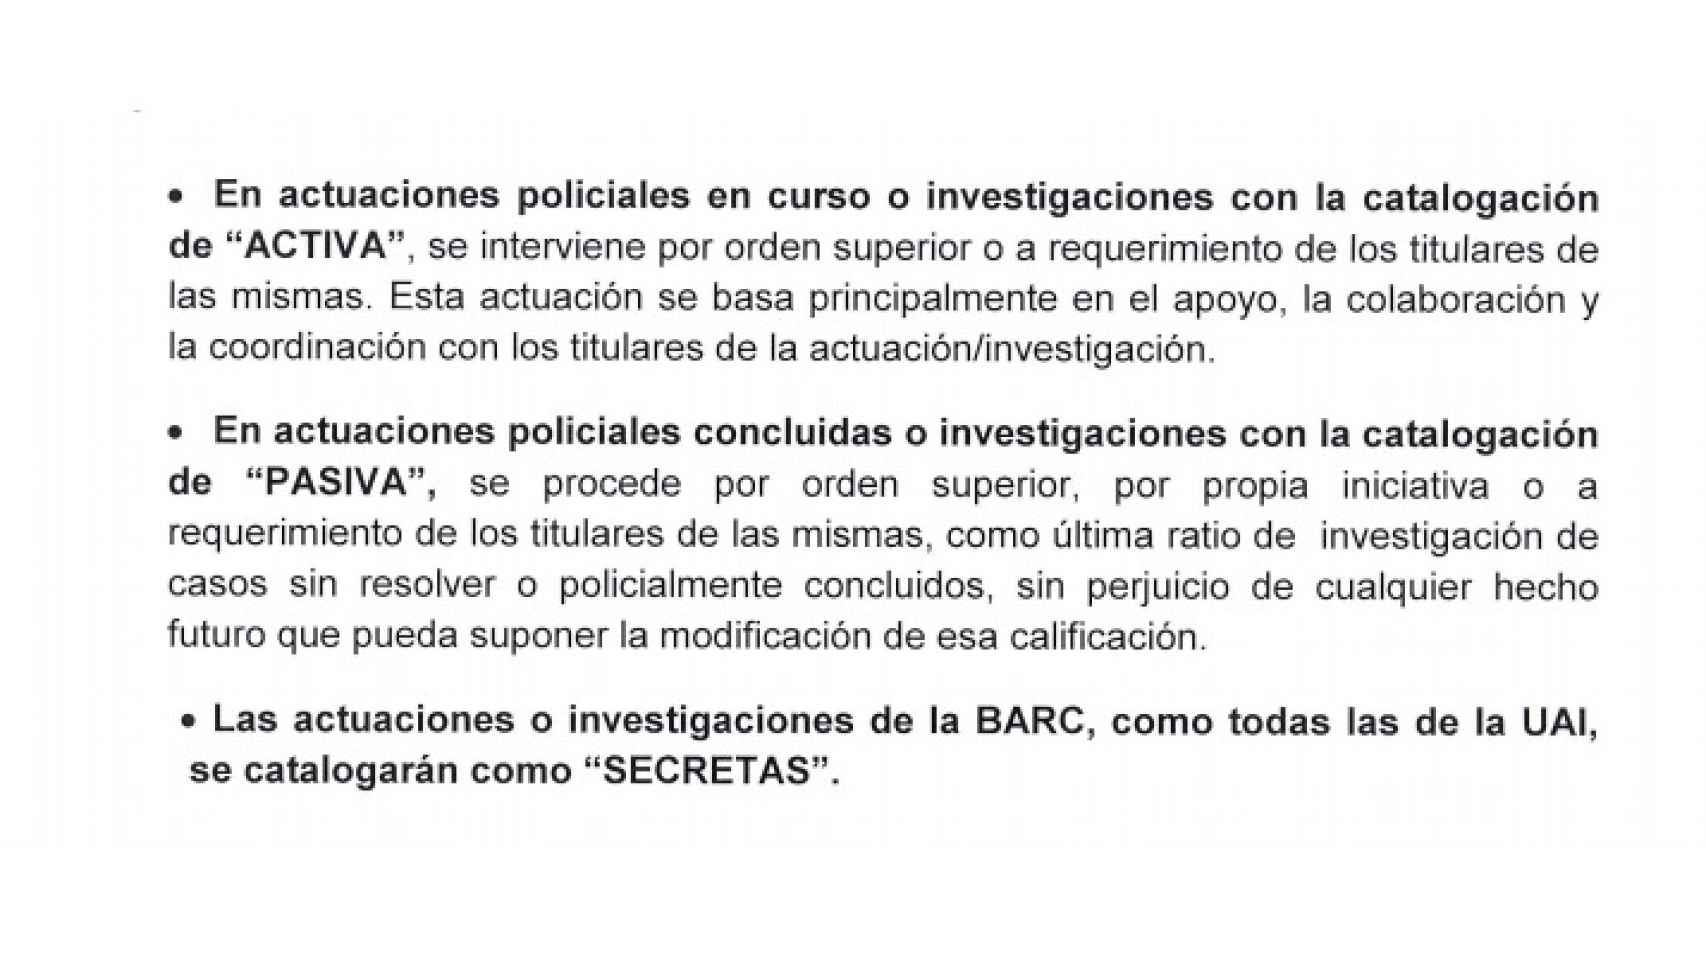 Extracto del oficio en el que Pino establecía las funciones de la BARC.